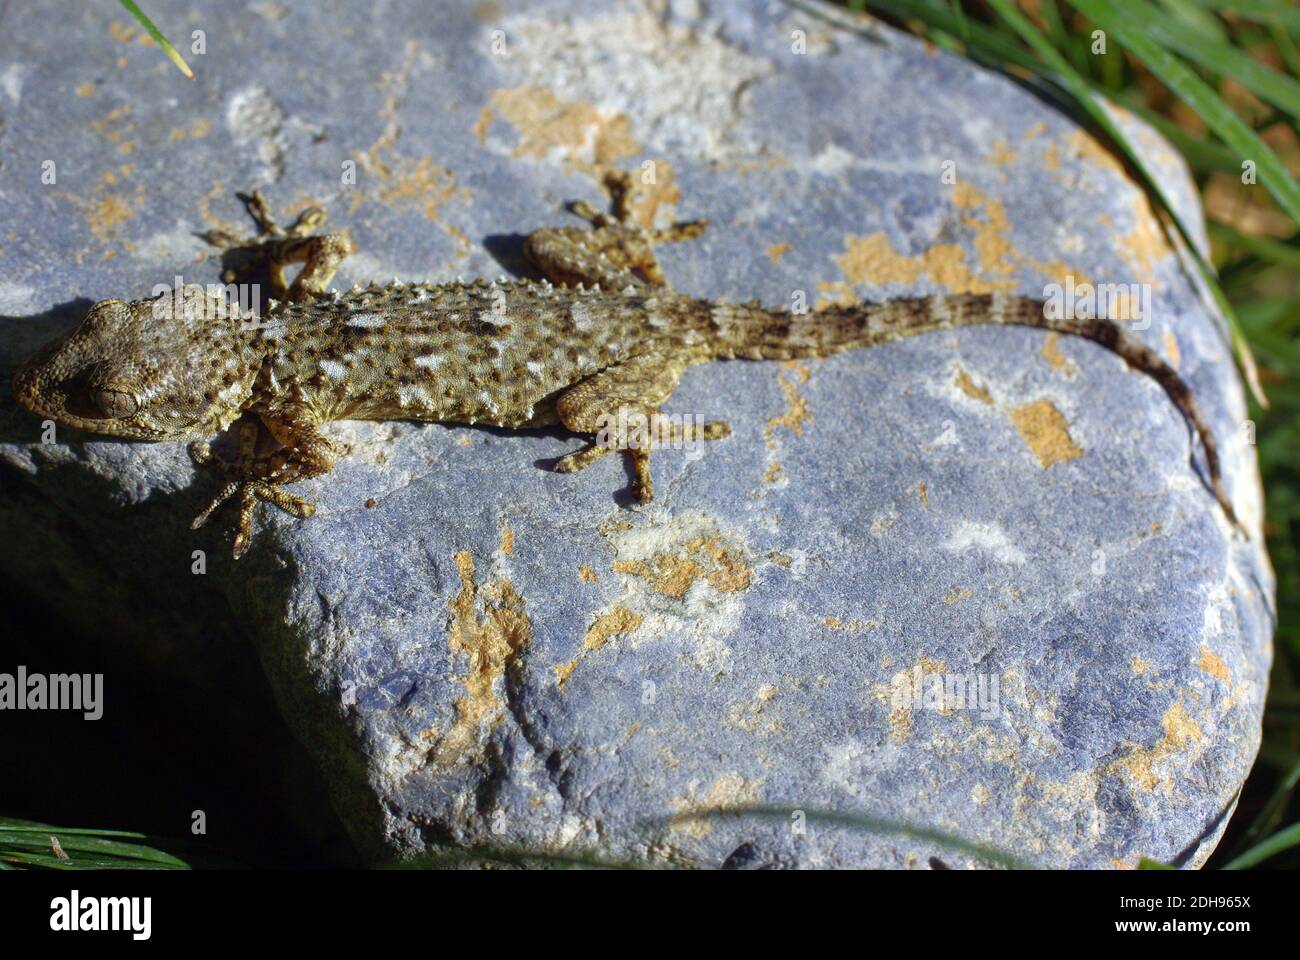 Tarentola mauritanica, conocida como la pared común gecko, es una especie de gecko (Gekkota) nativa de la región mediterránea occidental Foto de stock